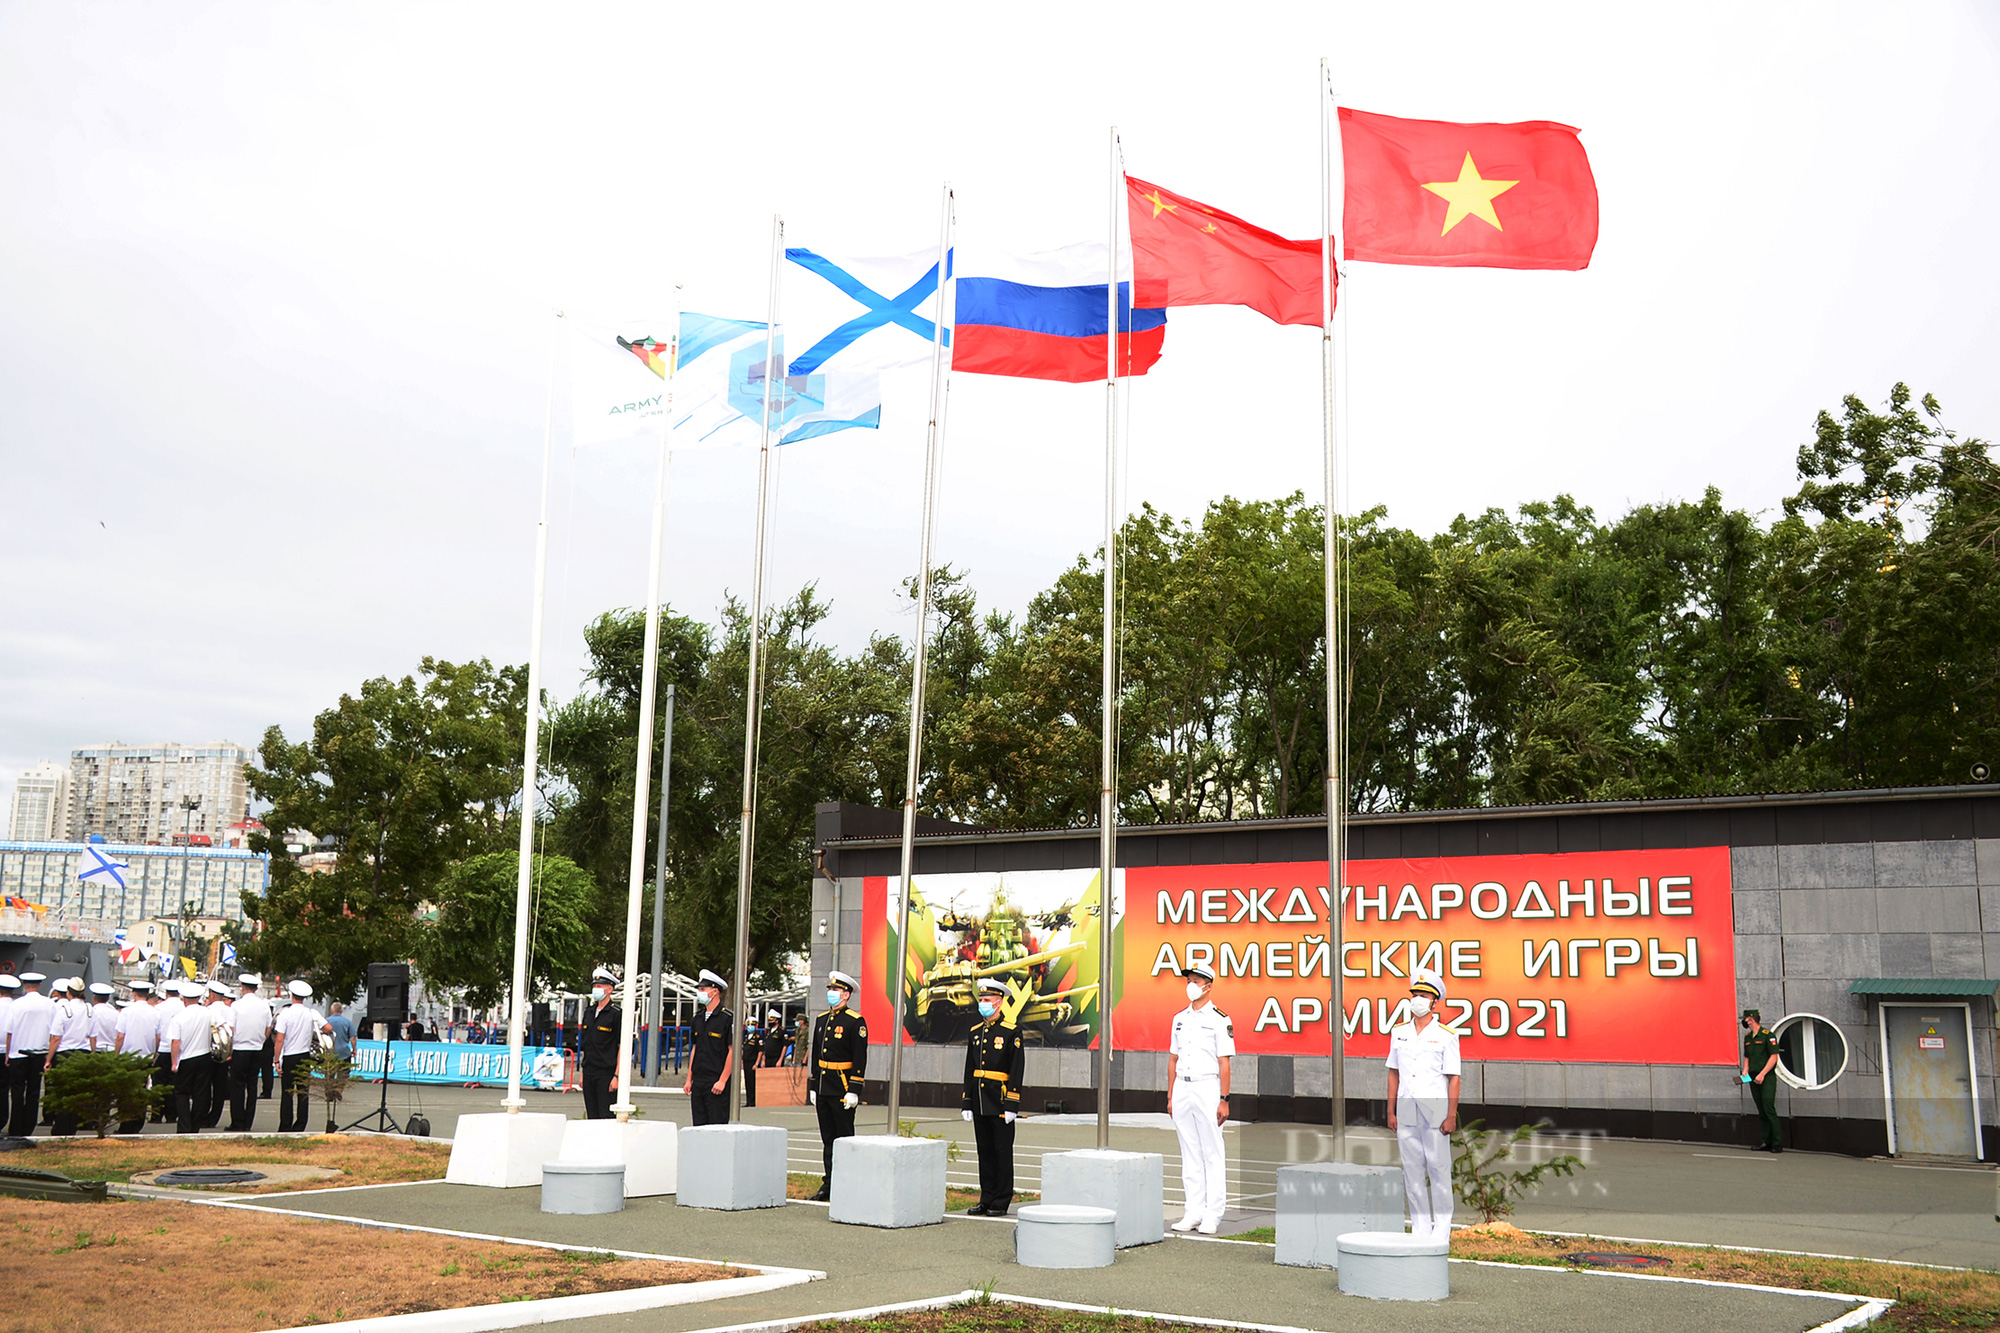 Quốc kỳ Việt Nam tung bay trên quân cảng hạm đội Thái Bình Dương tại Lễ khai mạc Army Games 2021 - Ảnh 9.